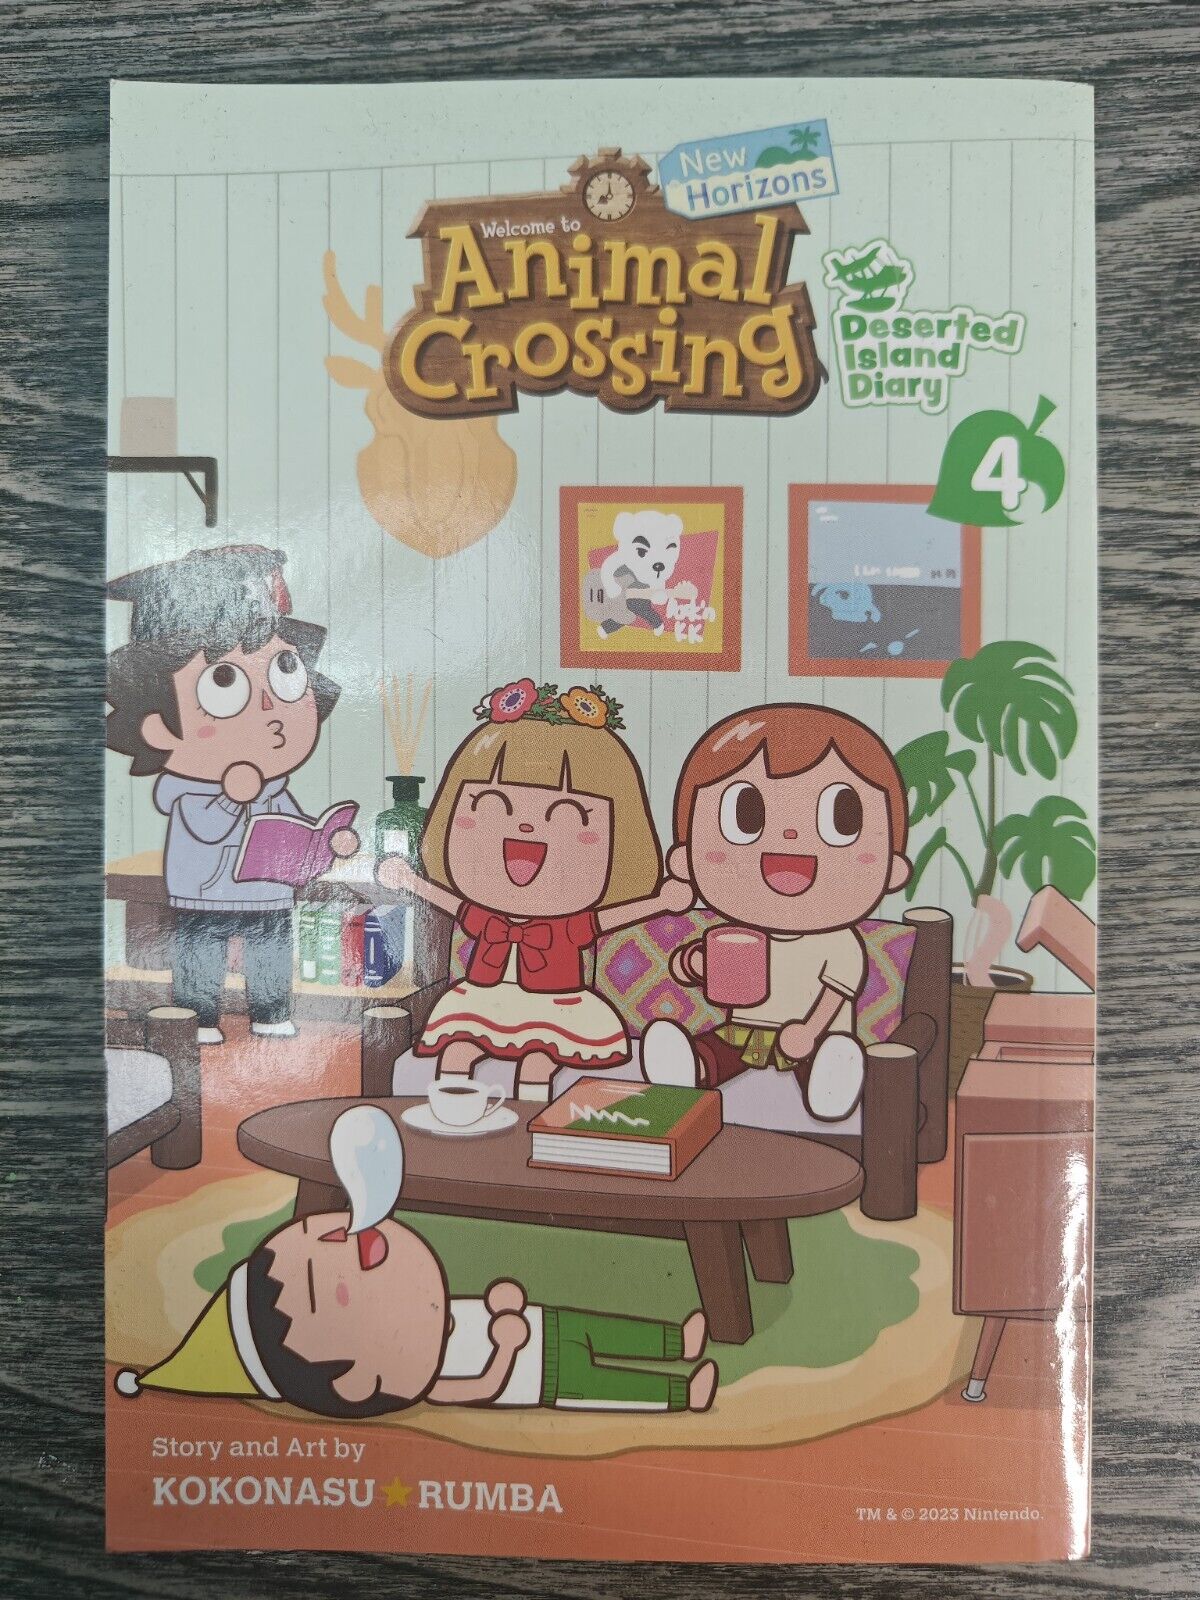 Animal Crossing: New Horizons, Vol. 4: Deserted Island Diary Manga